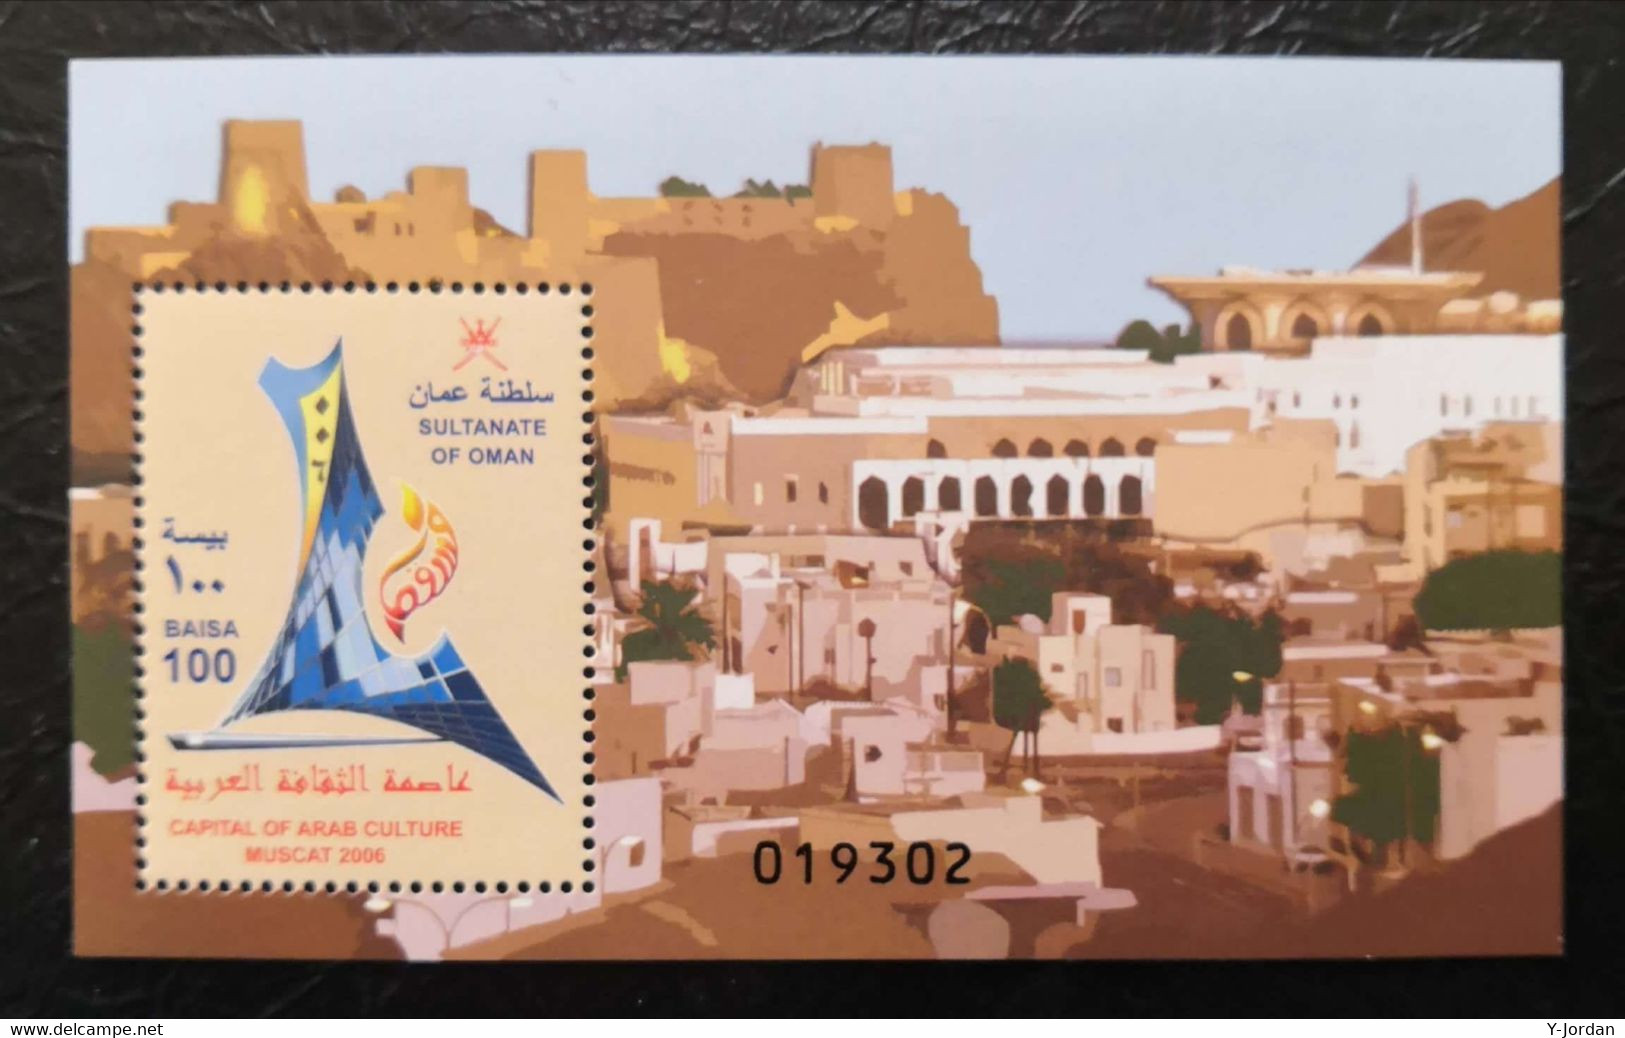 Oman - Capital Of Arab Culture Muscat 2006 (MNH) - Oman